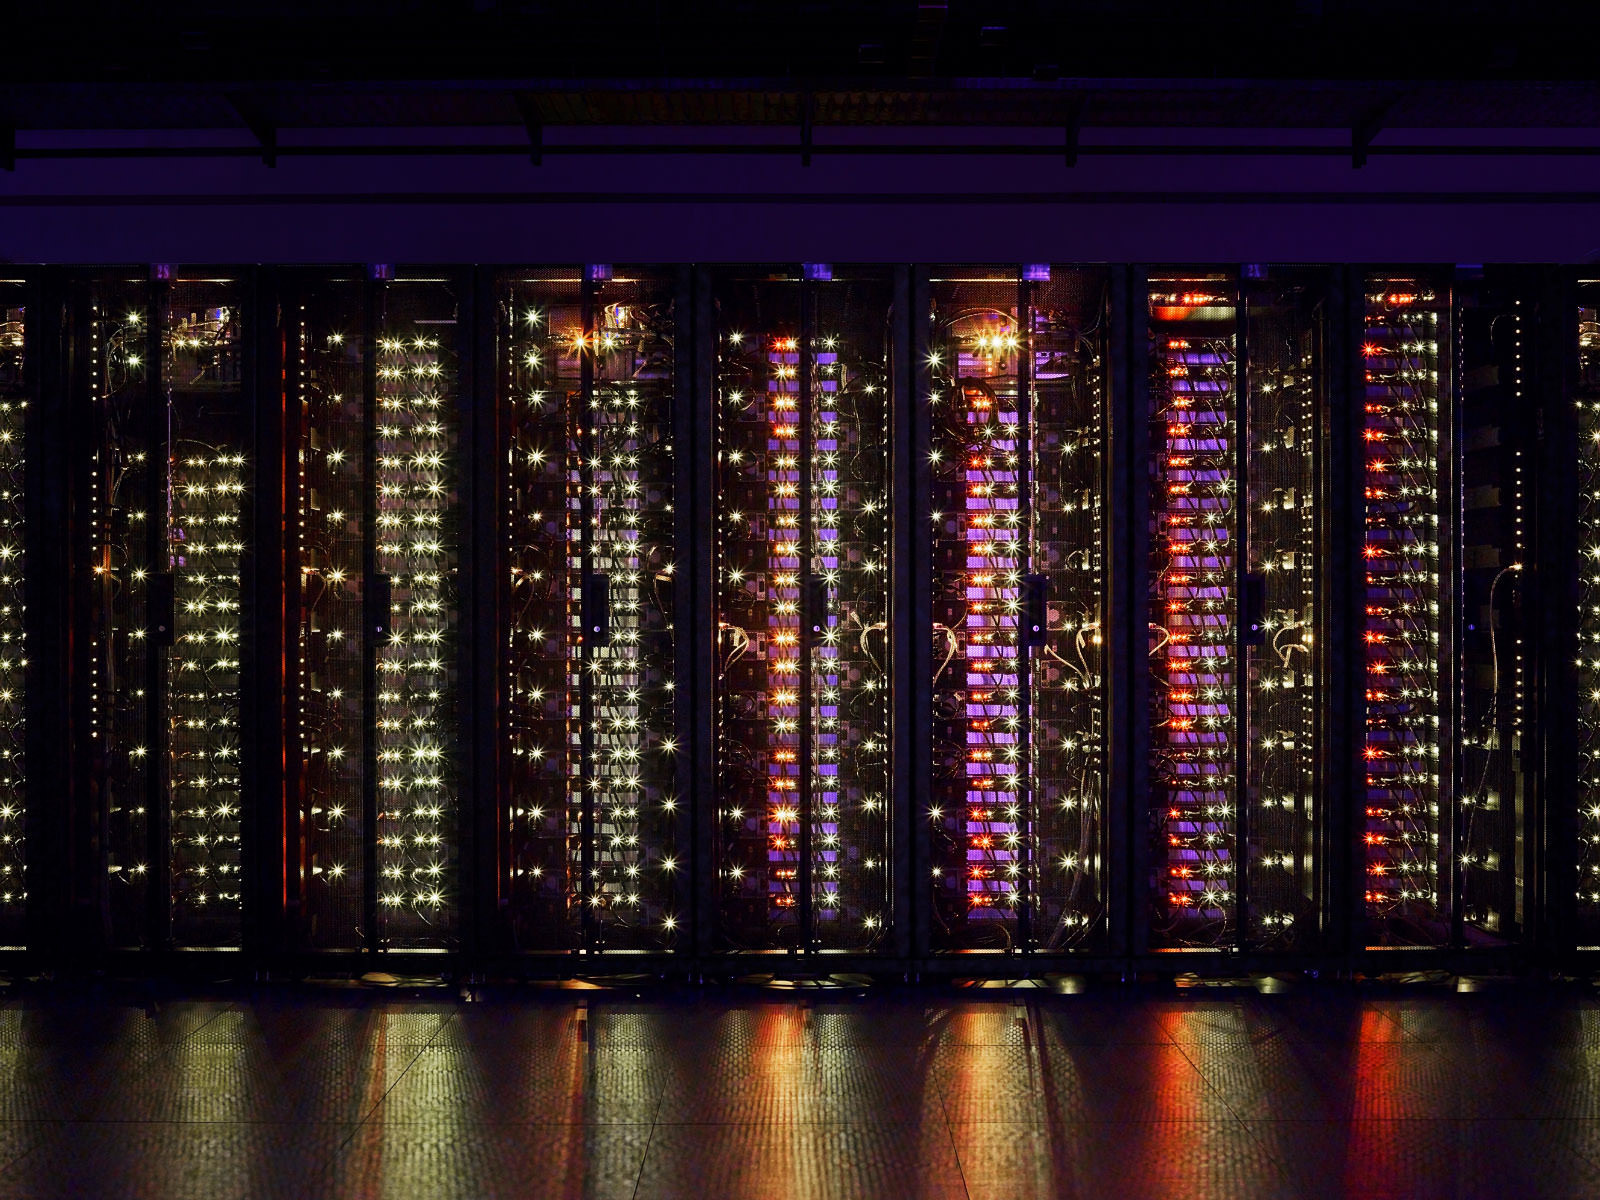 Aufnahme eines Serverschranks bei ausgeschaltetem Licht - wirkt wie die Skyline einer Stadt